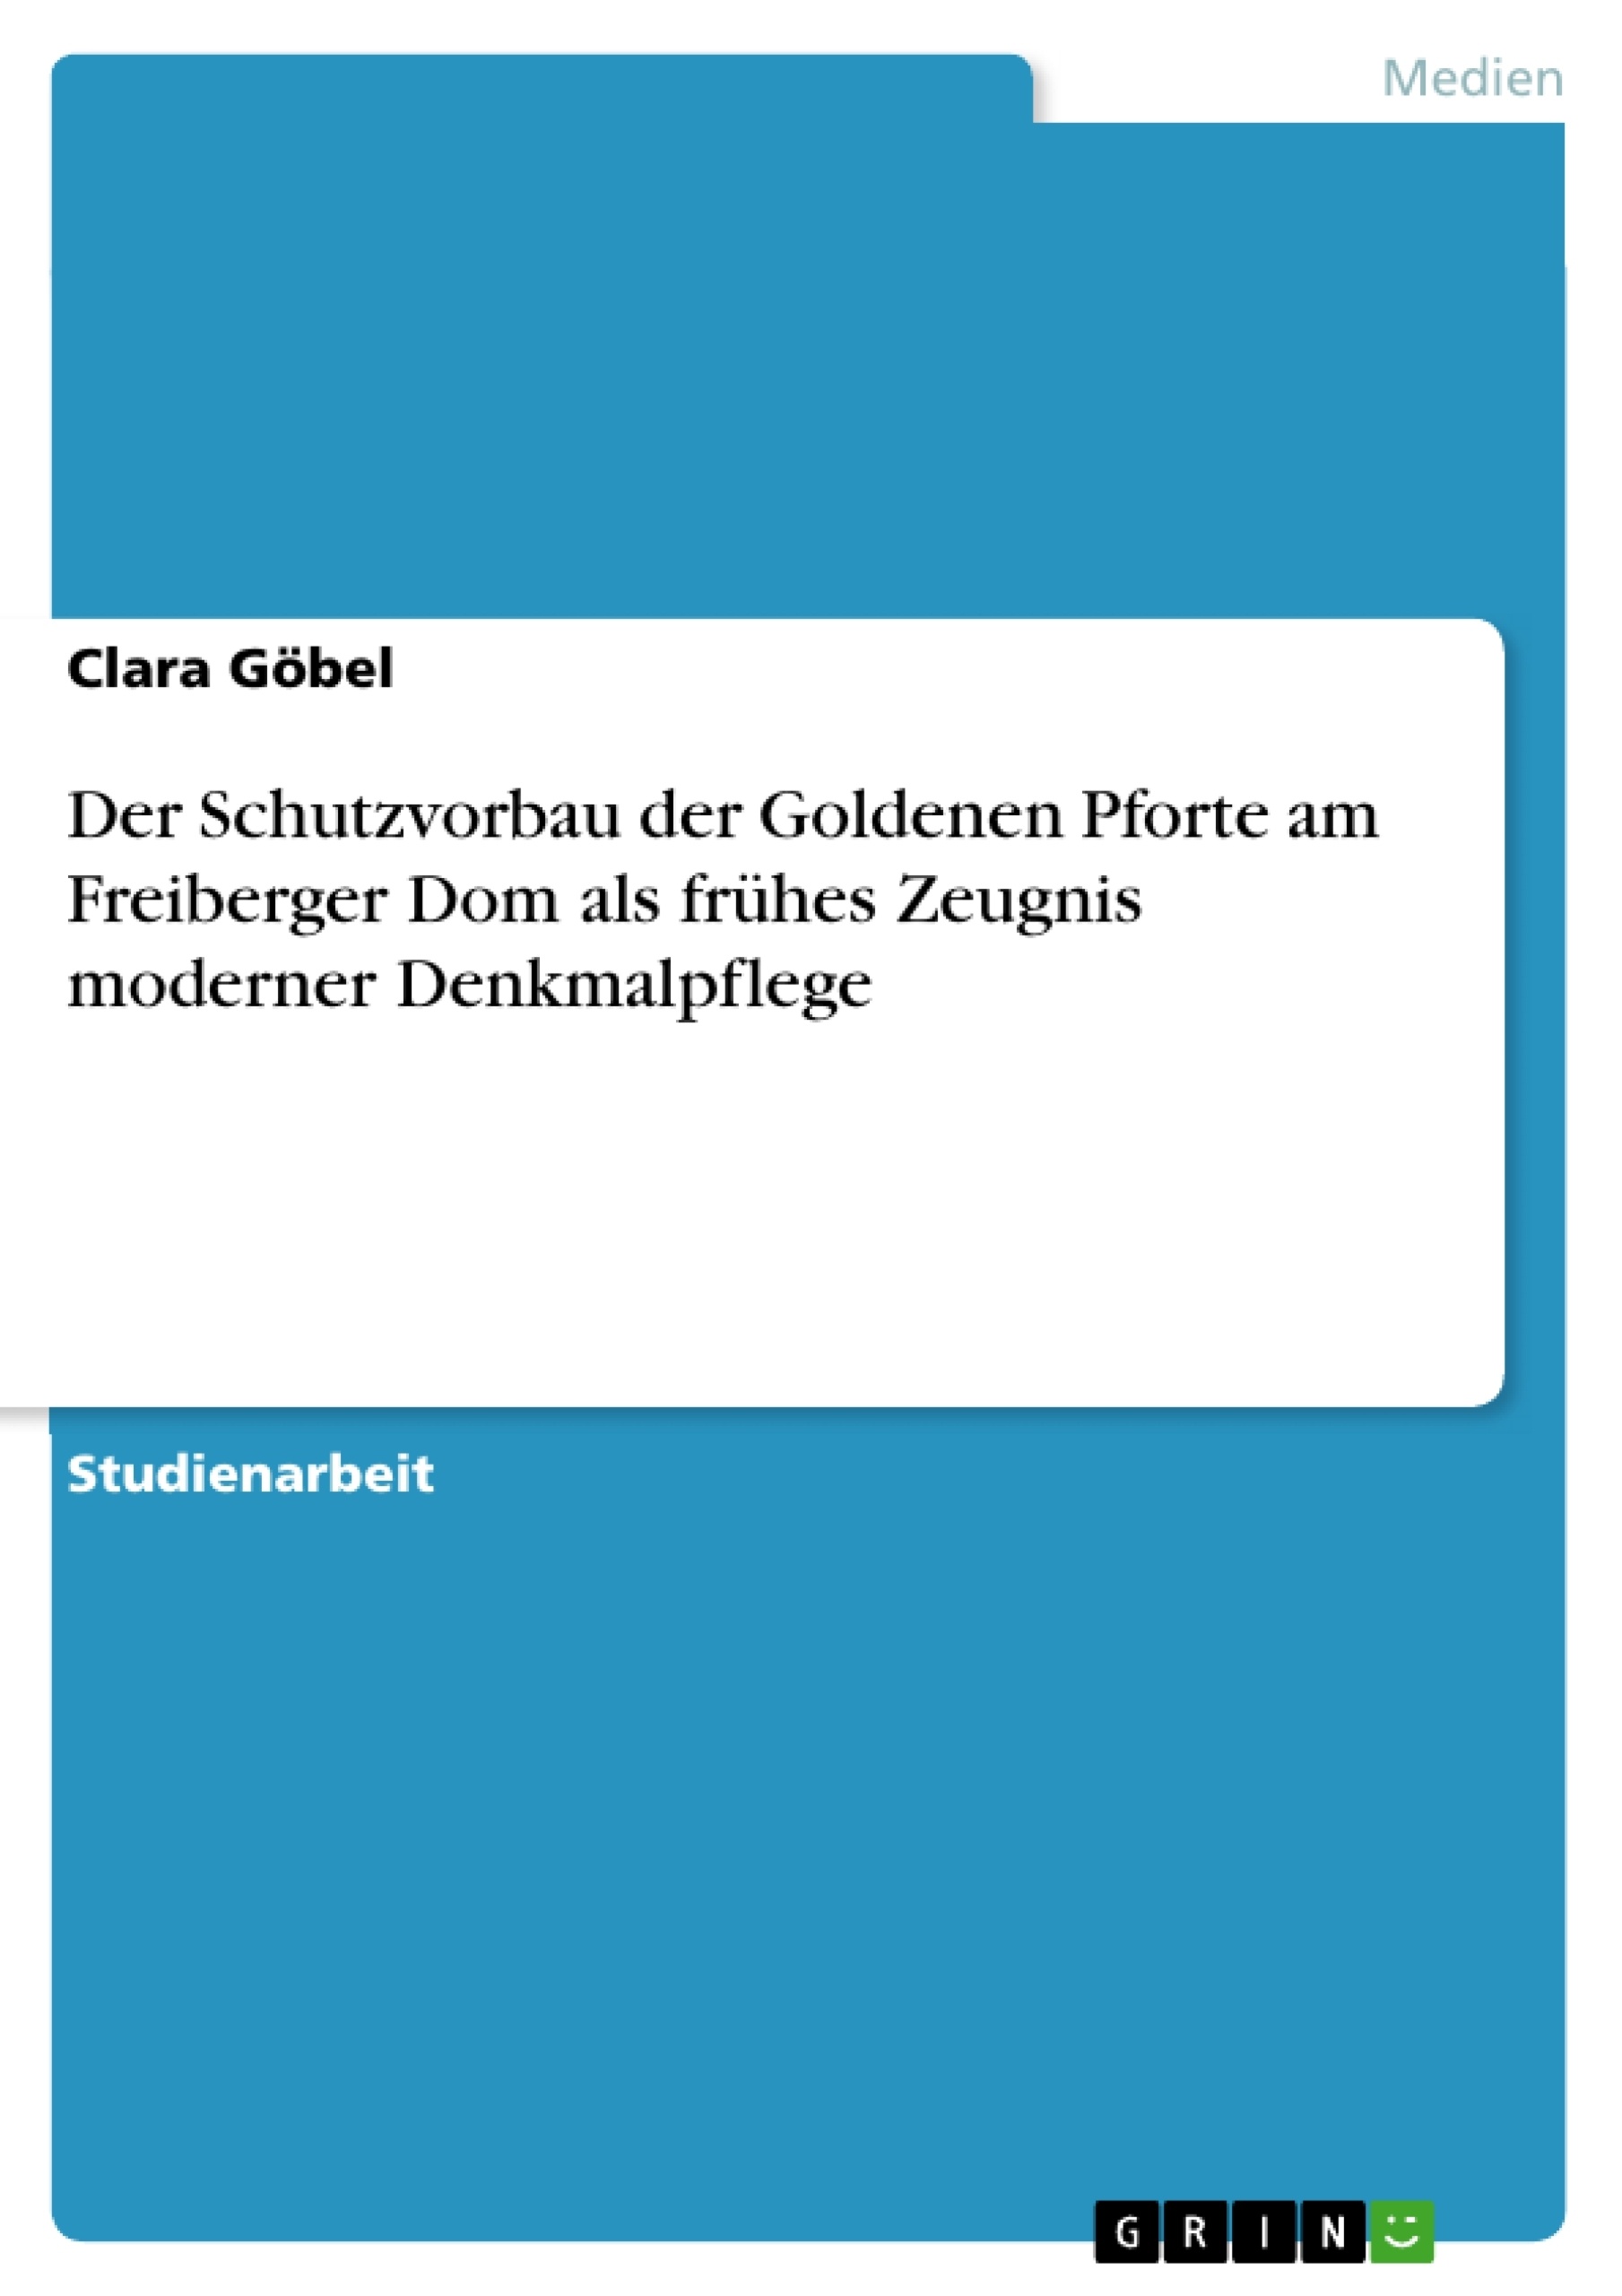 Título: Der Schutzvorbau der Goldenen Pforte am Freiberger Dom als frühes Zeugnis moderner Denkmalpflege